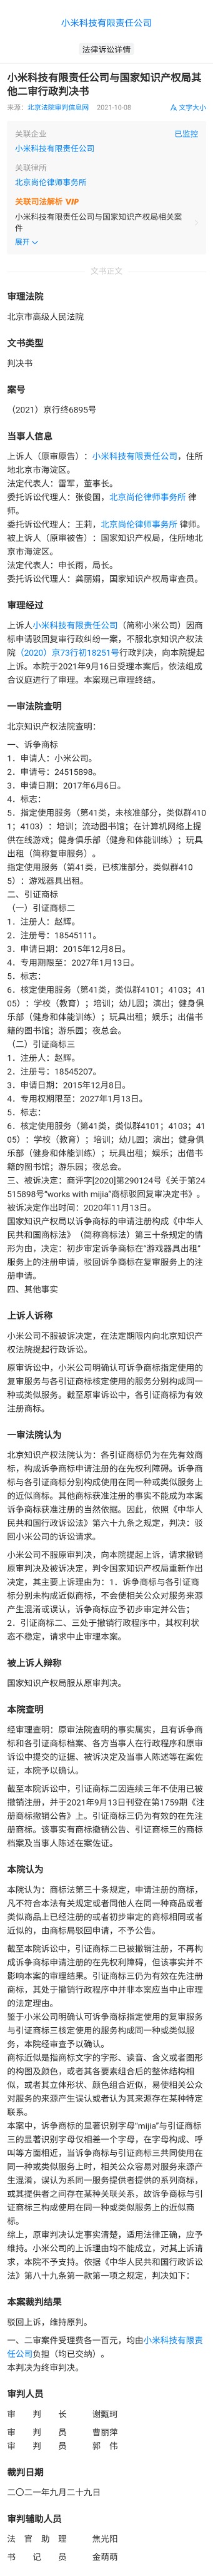 摩臣5平台小米诉争“米家mijia”商标被驳回：容易使公众混淆误认